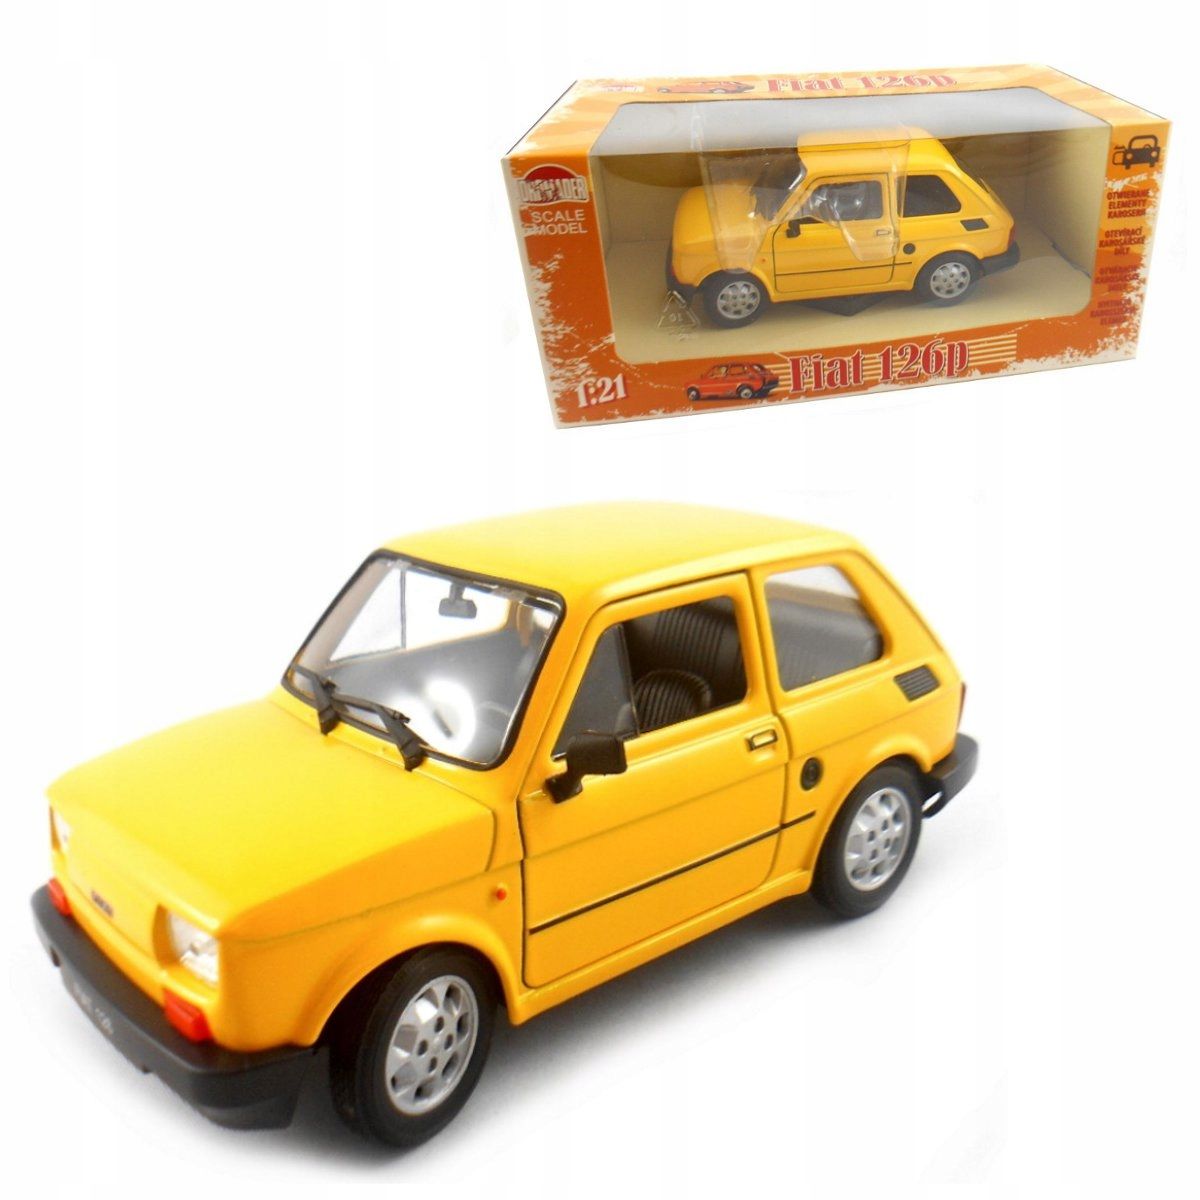 Fiat 126p Maluch PRL żółty skala 1:21 Welly